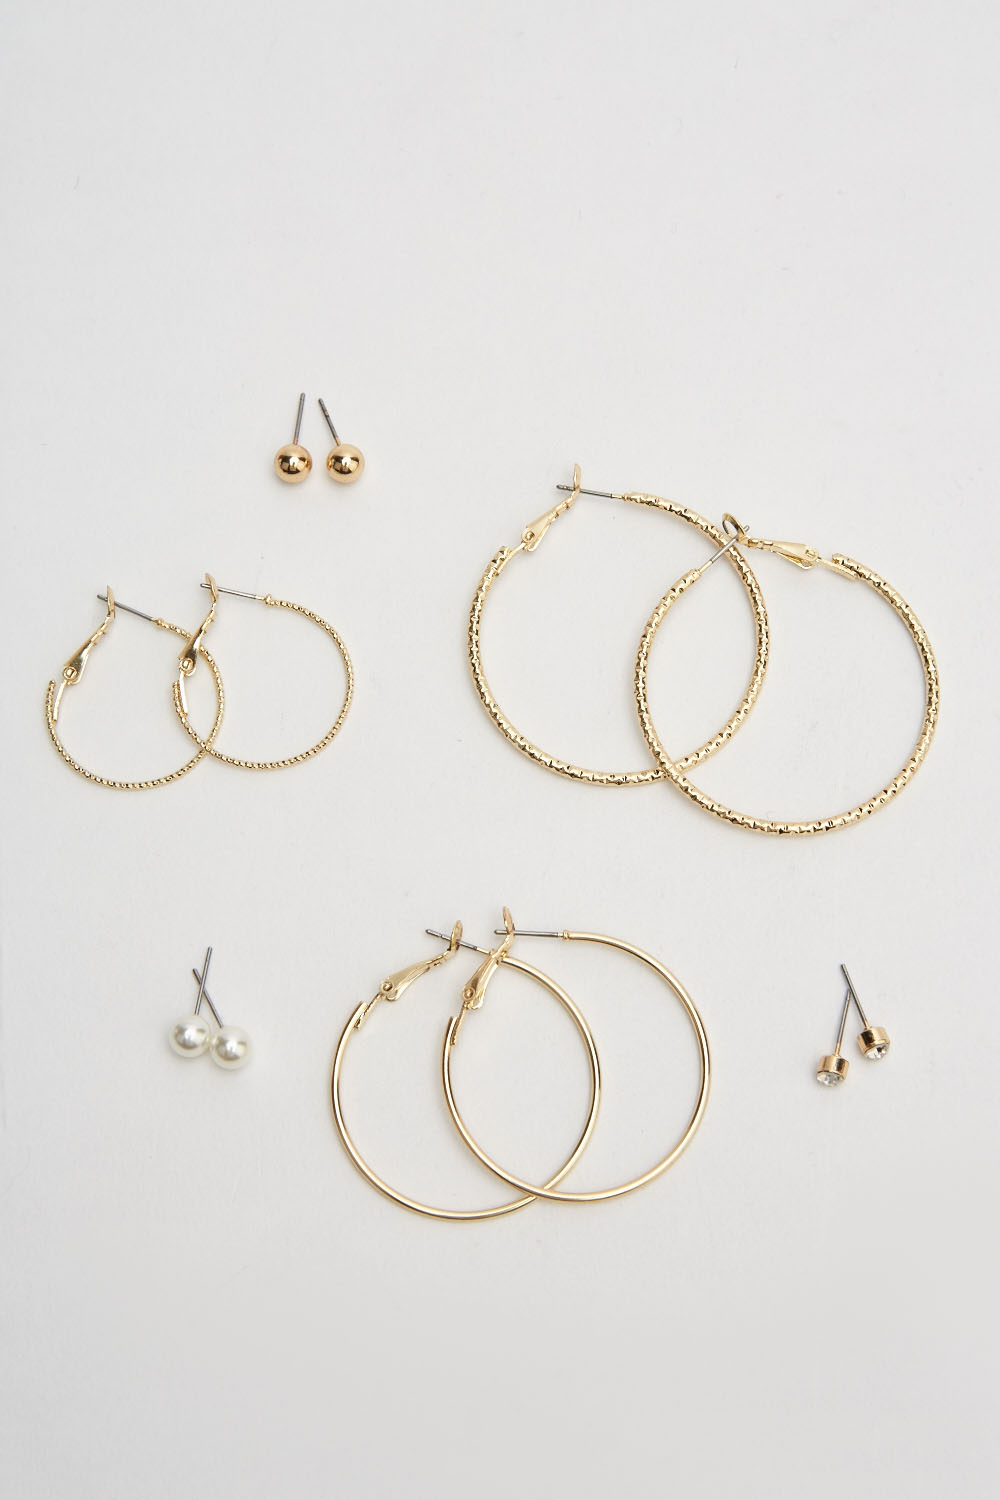 Set Of 6 Hoop And Stud Earrings Set - Just $7